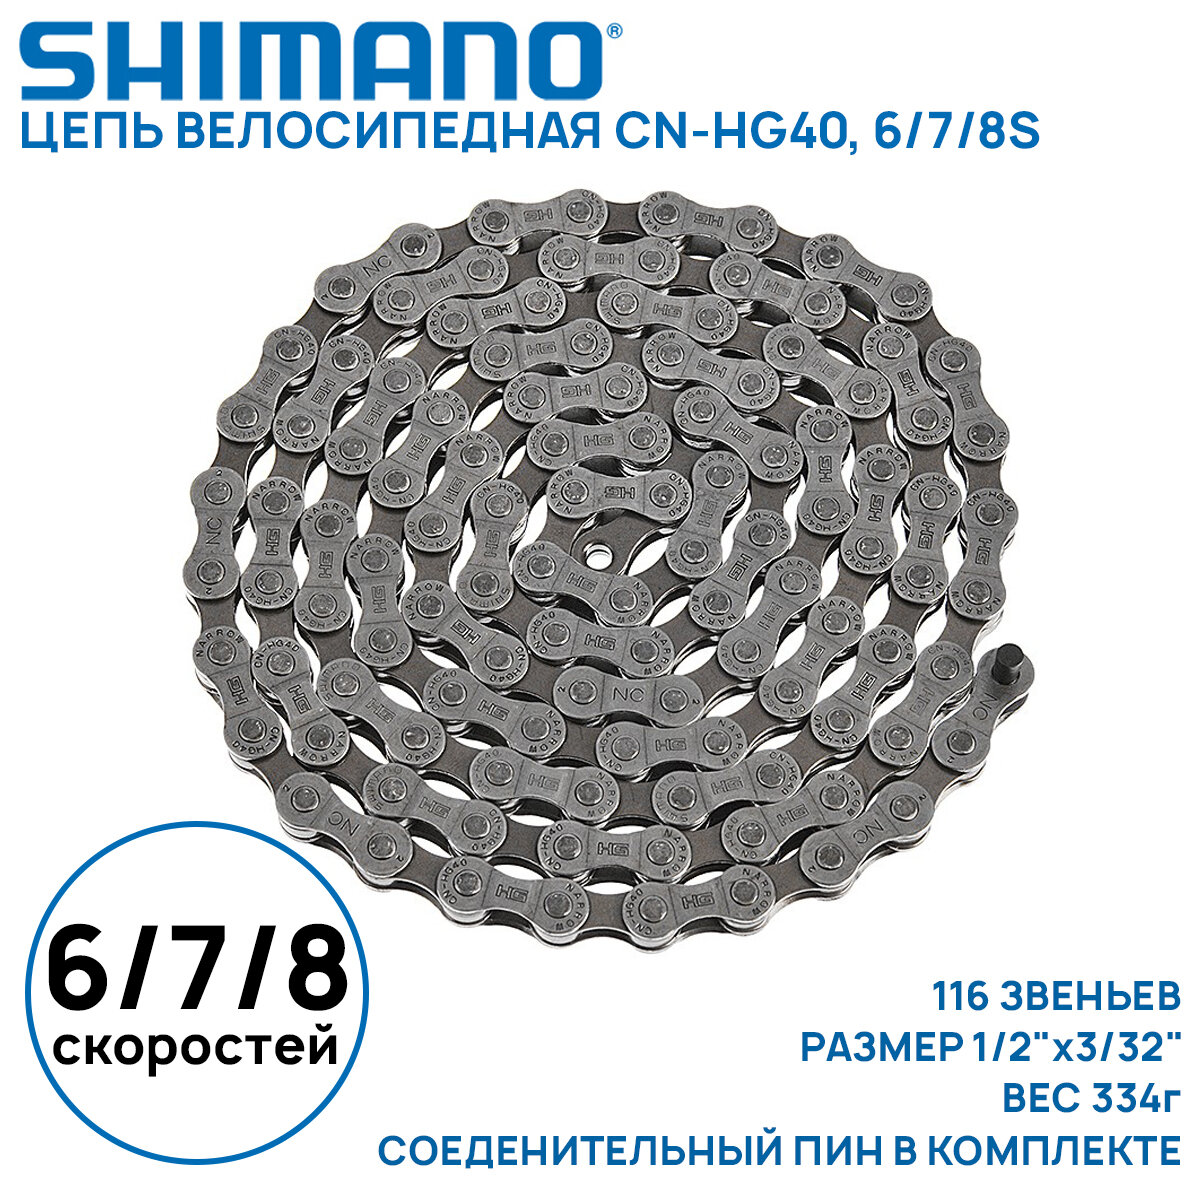 Цепь для велосипеда Shimano CN-HG40 на 6/7/8 скоростей, 116 звеньев, соединительный пин (1 шт) (без фирменного бокса)